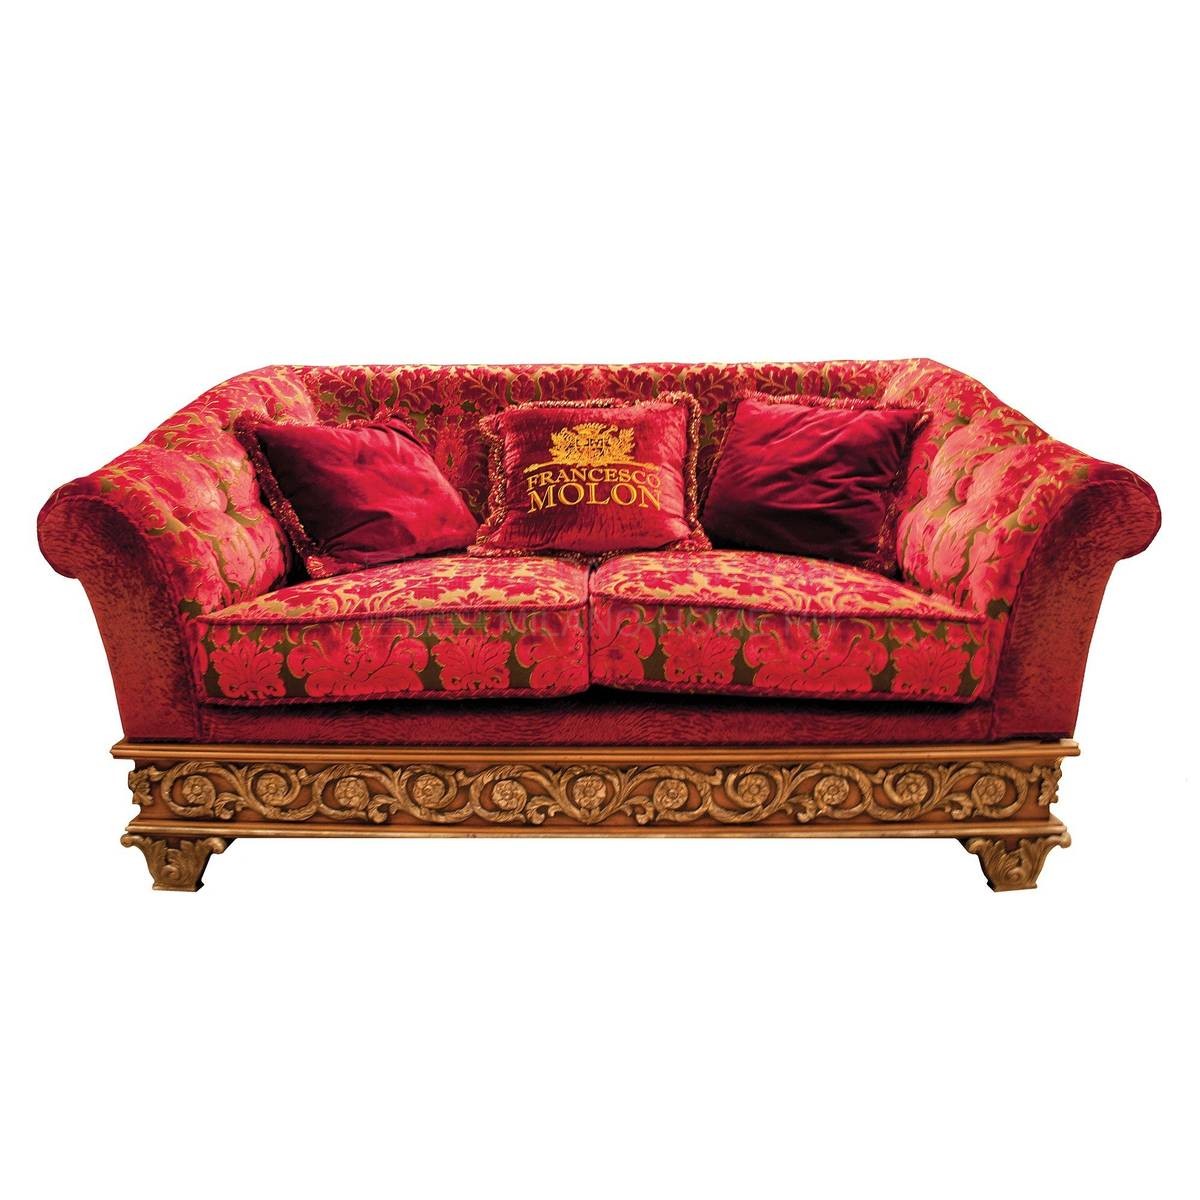 Прямой диван The Upholstery/D452 из Италии фабрики FRANCESCO MOLON